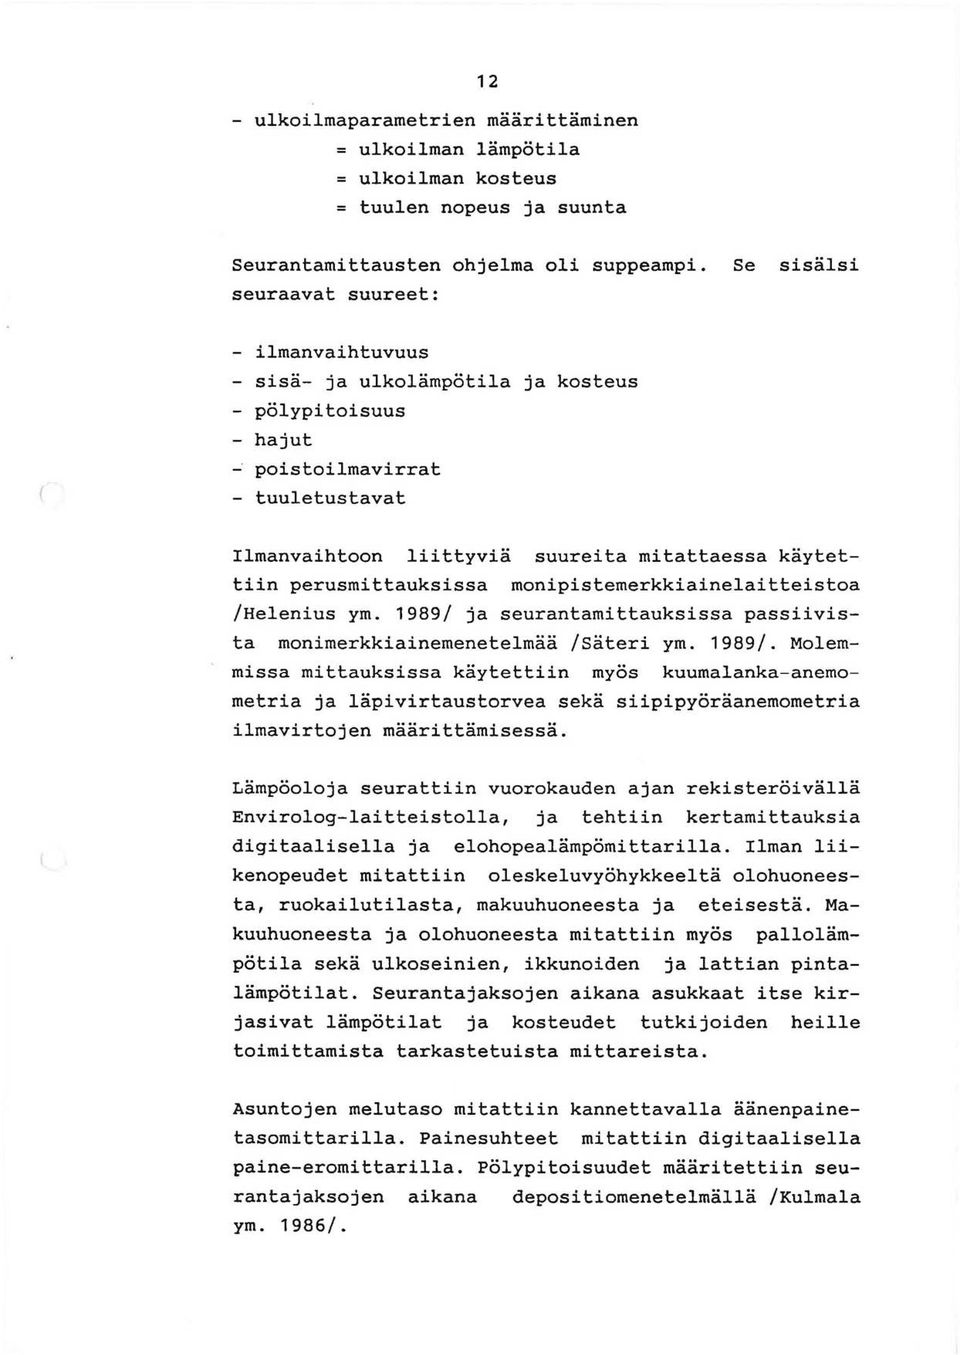 perusmittauksissa monipistemerkkiainelaitteistoa /Helenius ym. 1989/ 